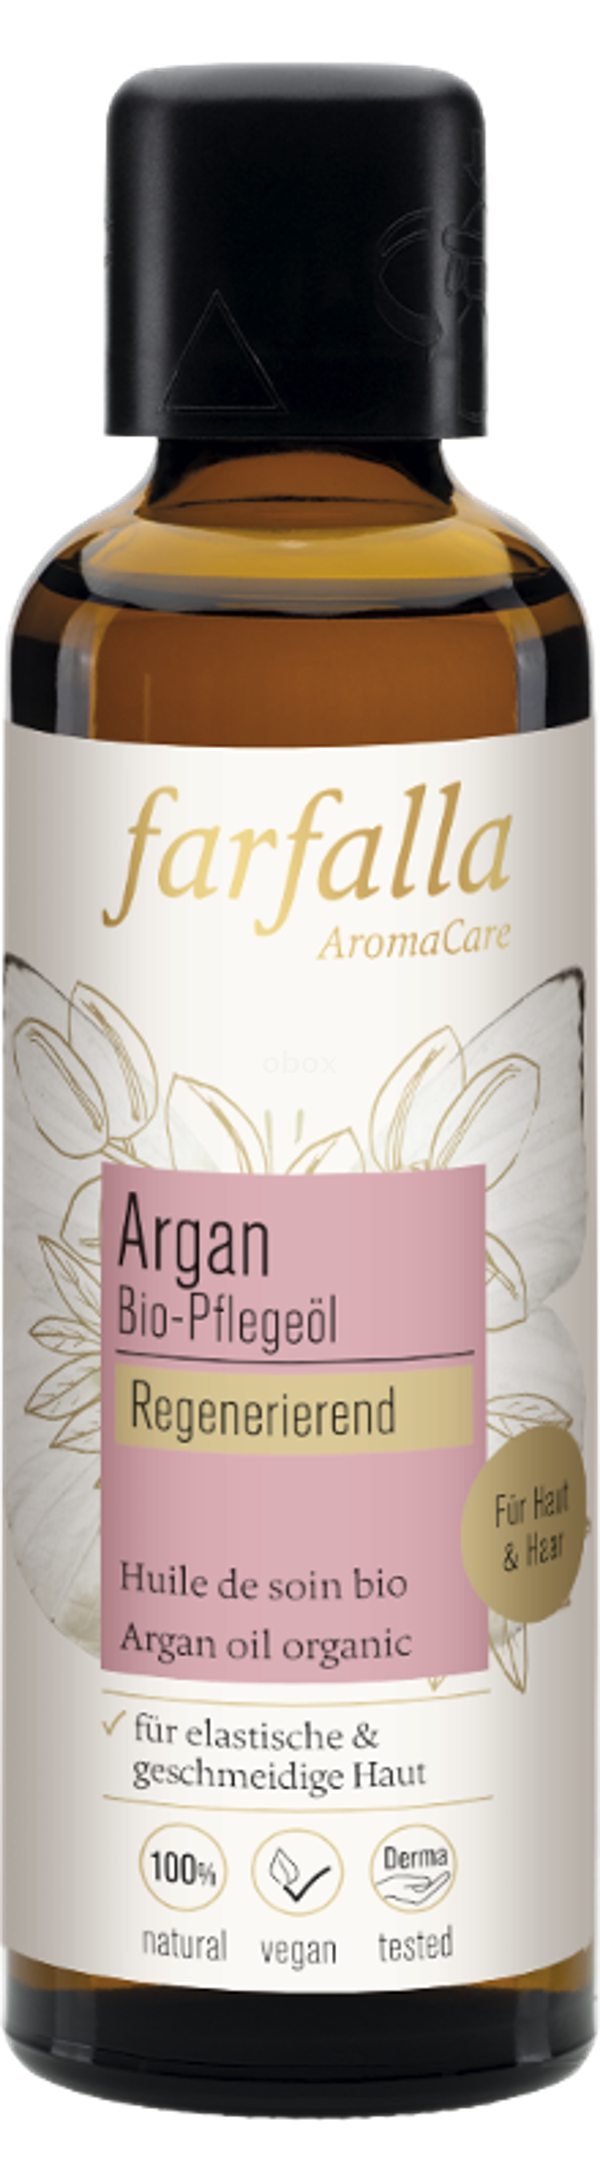 Produktfoto zu Argan Pflegeöl